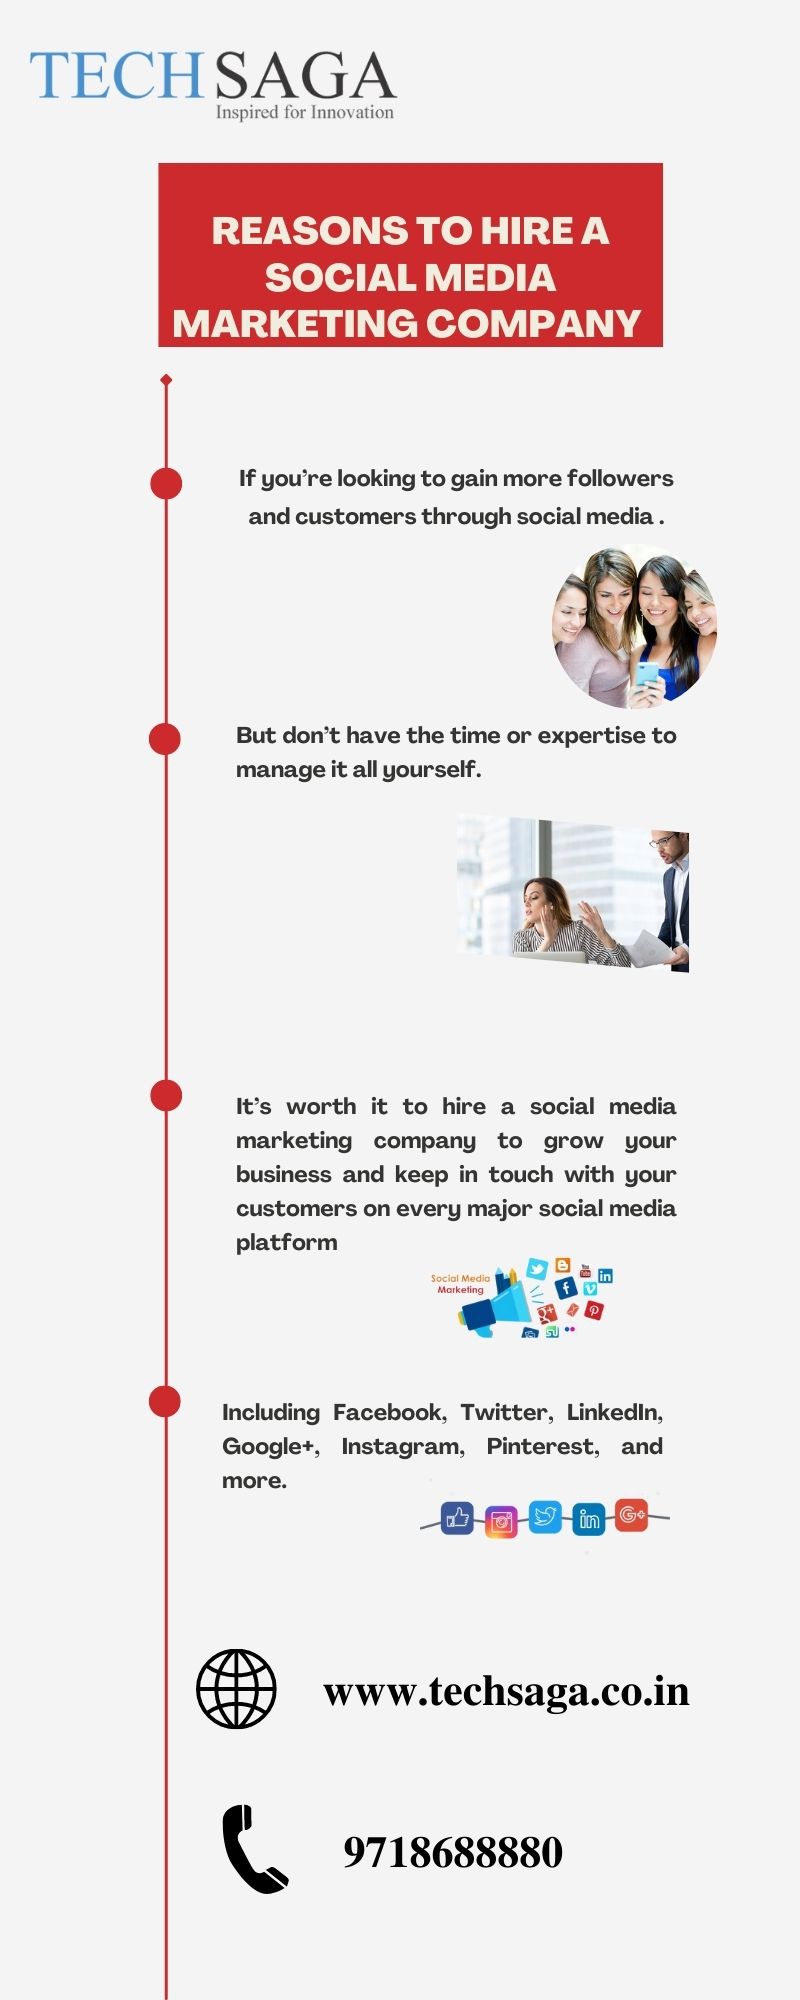 Reasons to Hire a Social Media Marketing Company.jpg  by techsaga